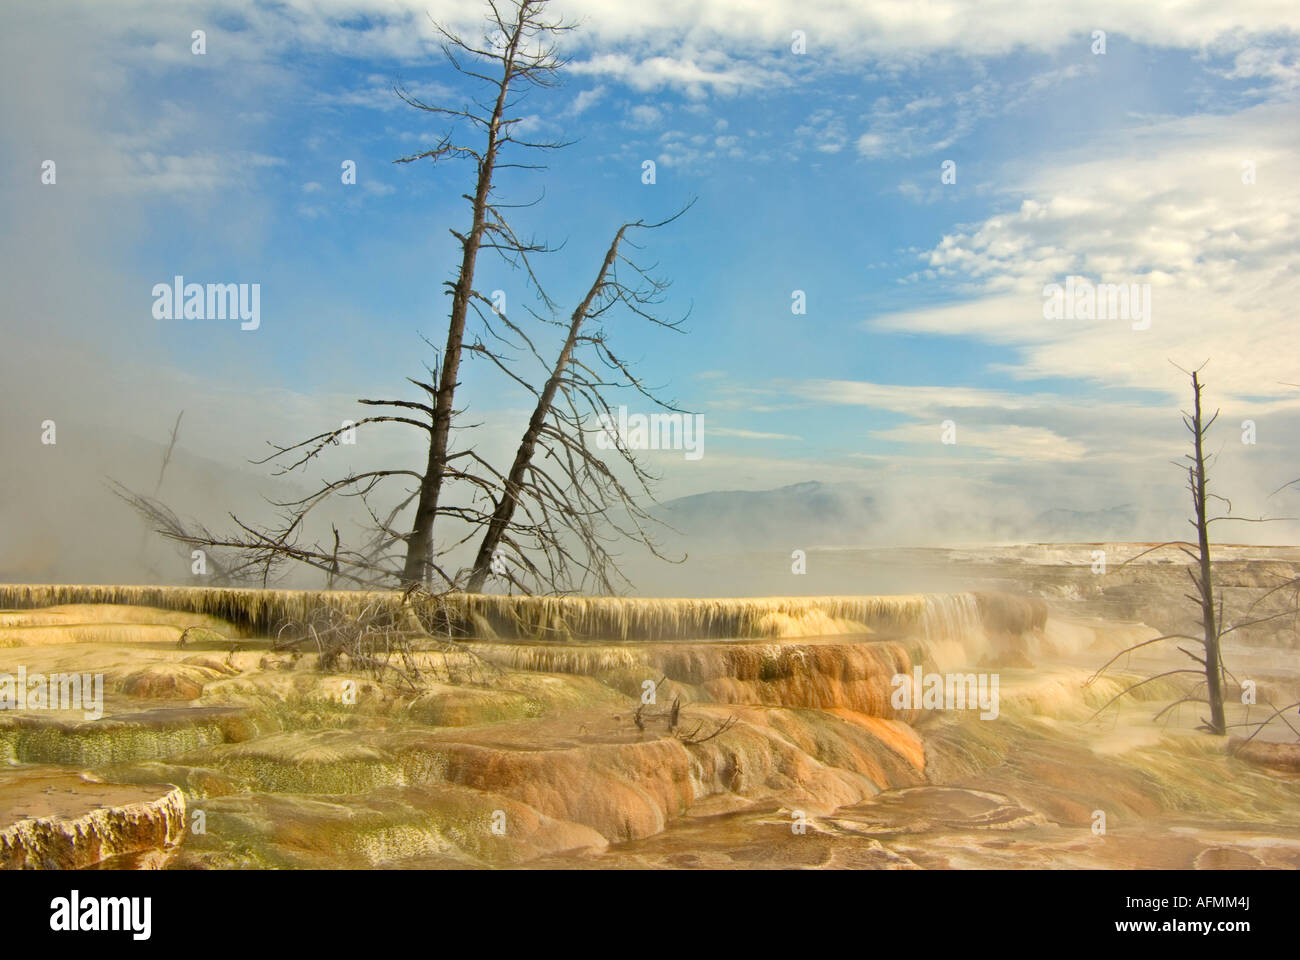 Mommoth Hot Springs Parc National de YellowStone terrasses faites de carbonate de calcium cristallisé Banque D'Images